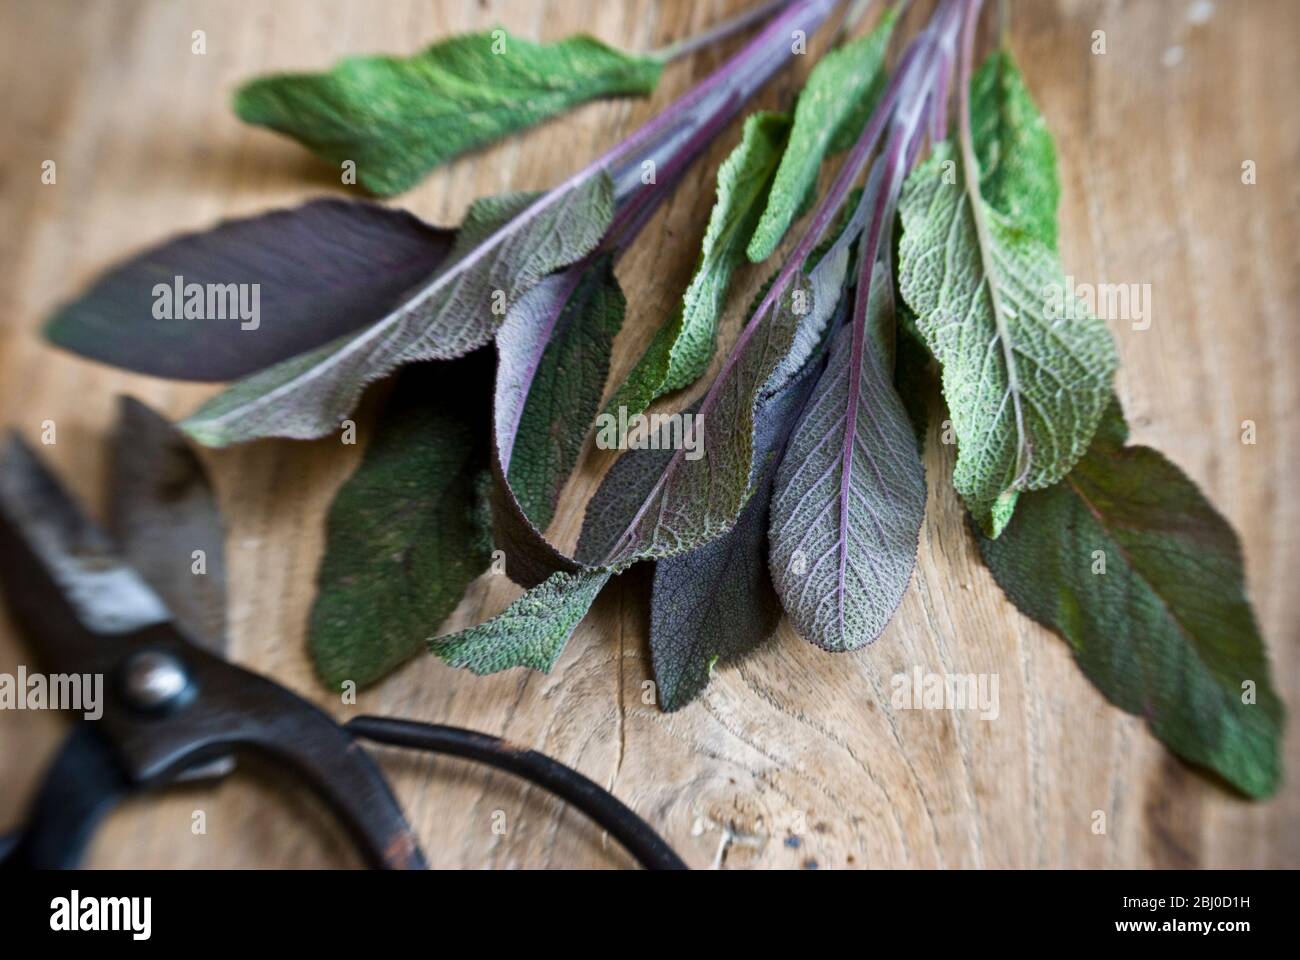 Rametto appena tagliato di foglie di salvia viola su vecchia superficie di legno, con forbici giapponesi - Foto Stock